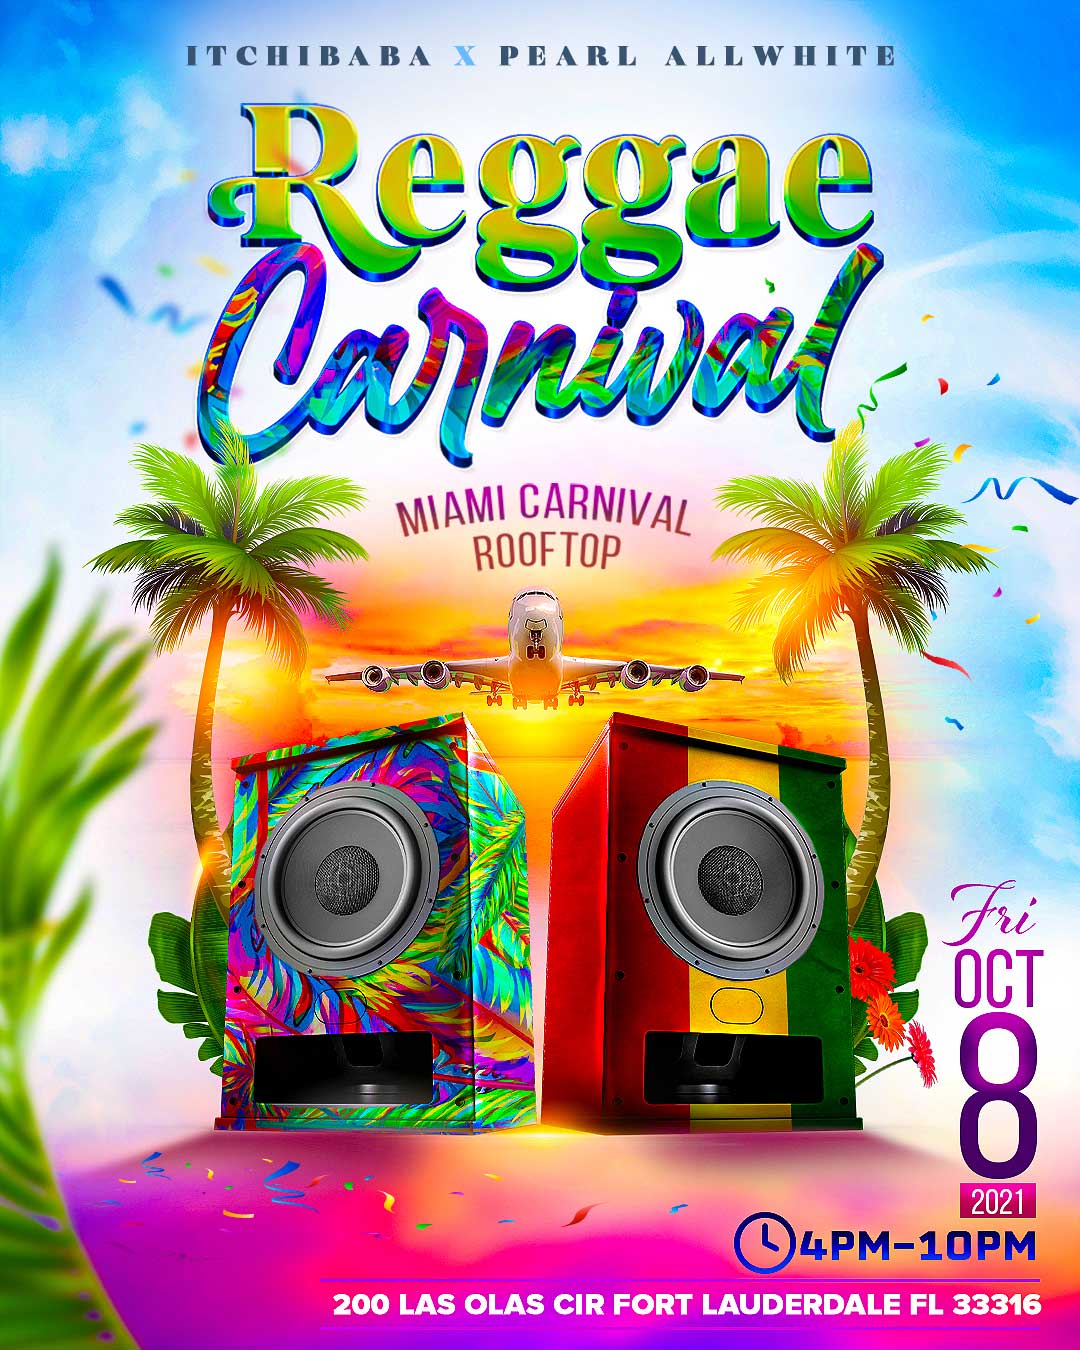 Reggae Carnival